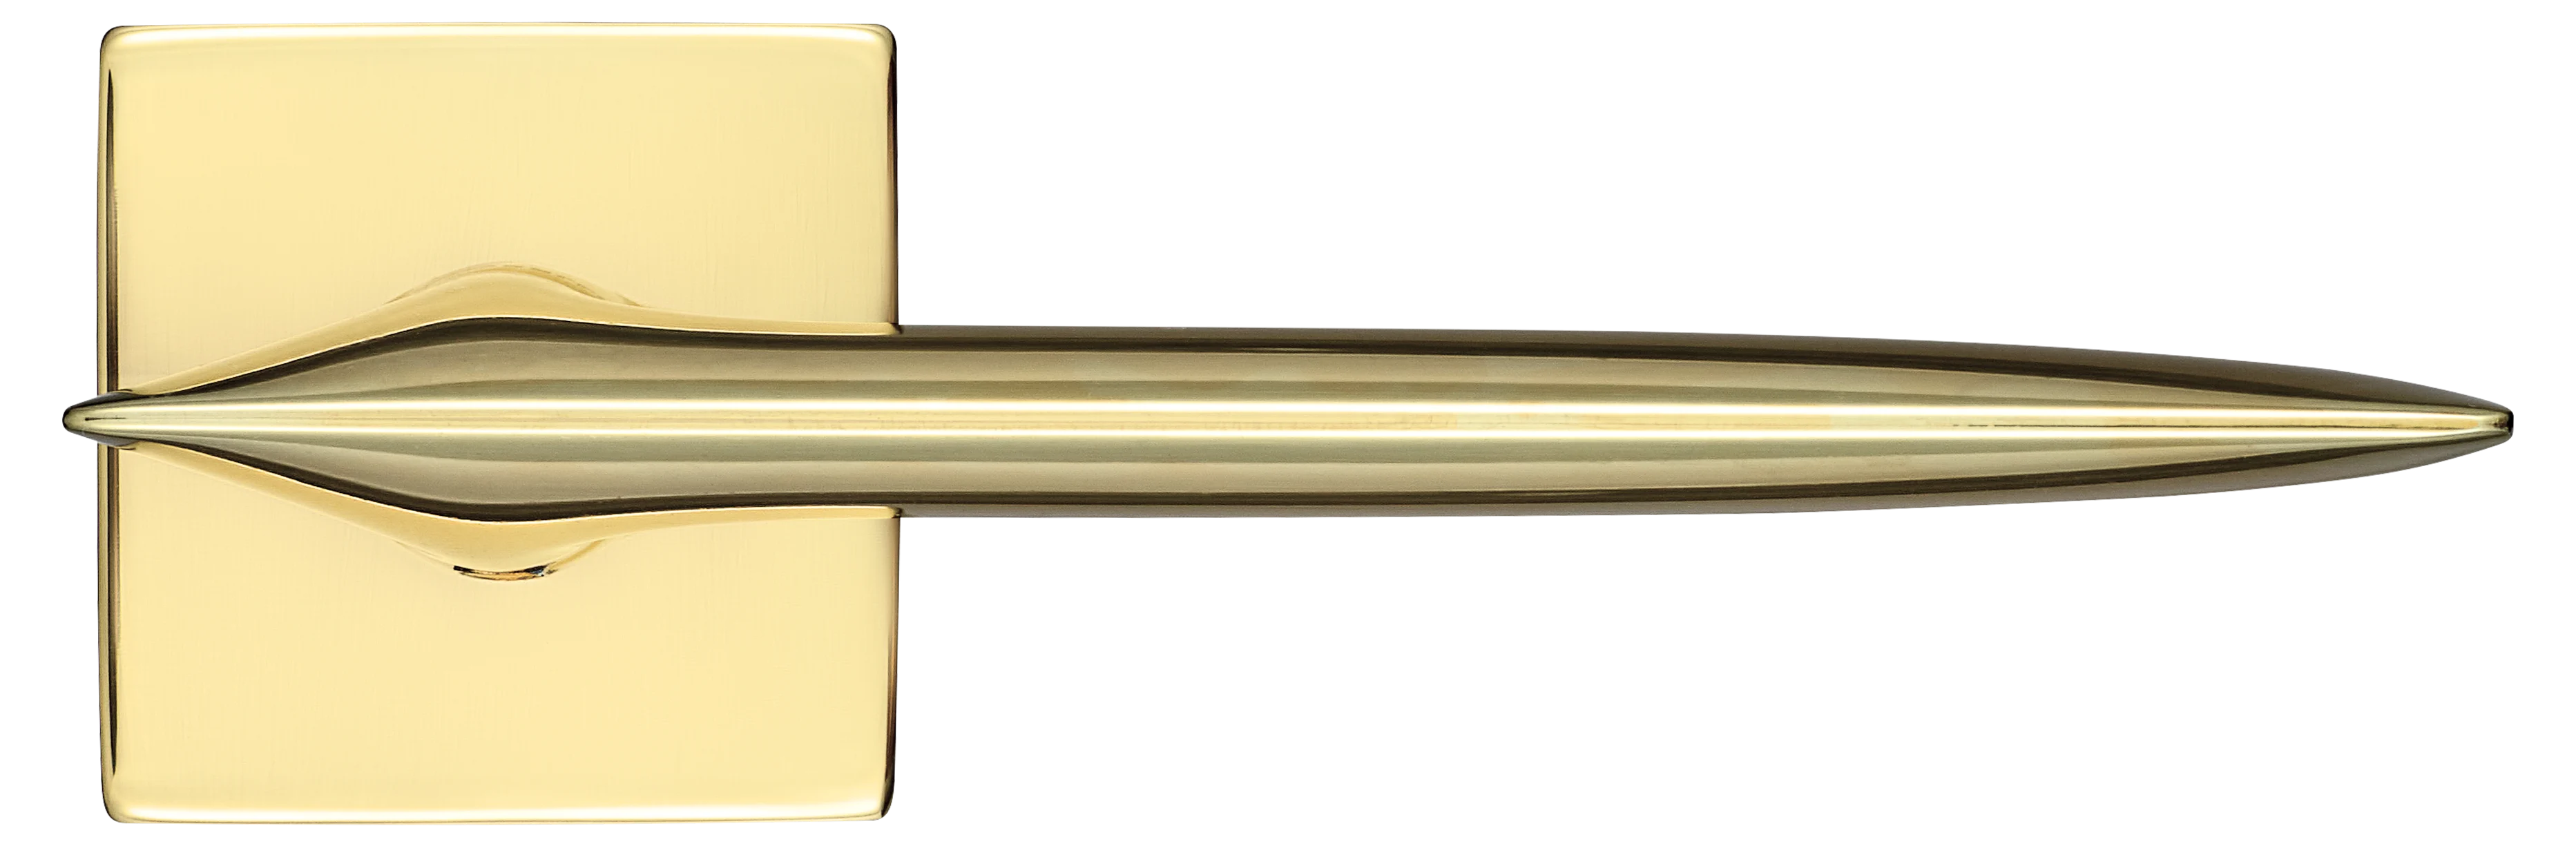 GALACTIC S5 OTL, ручка дверная, цвет -  золото фото купить в Рязани